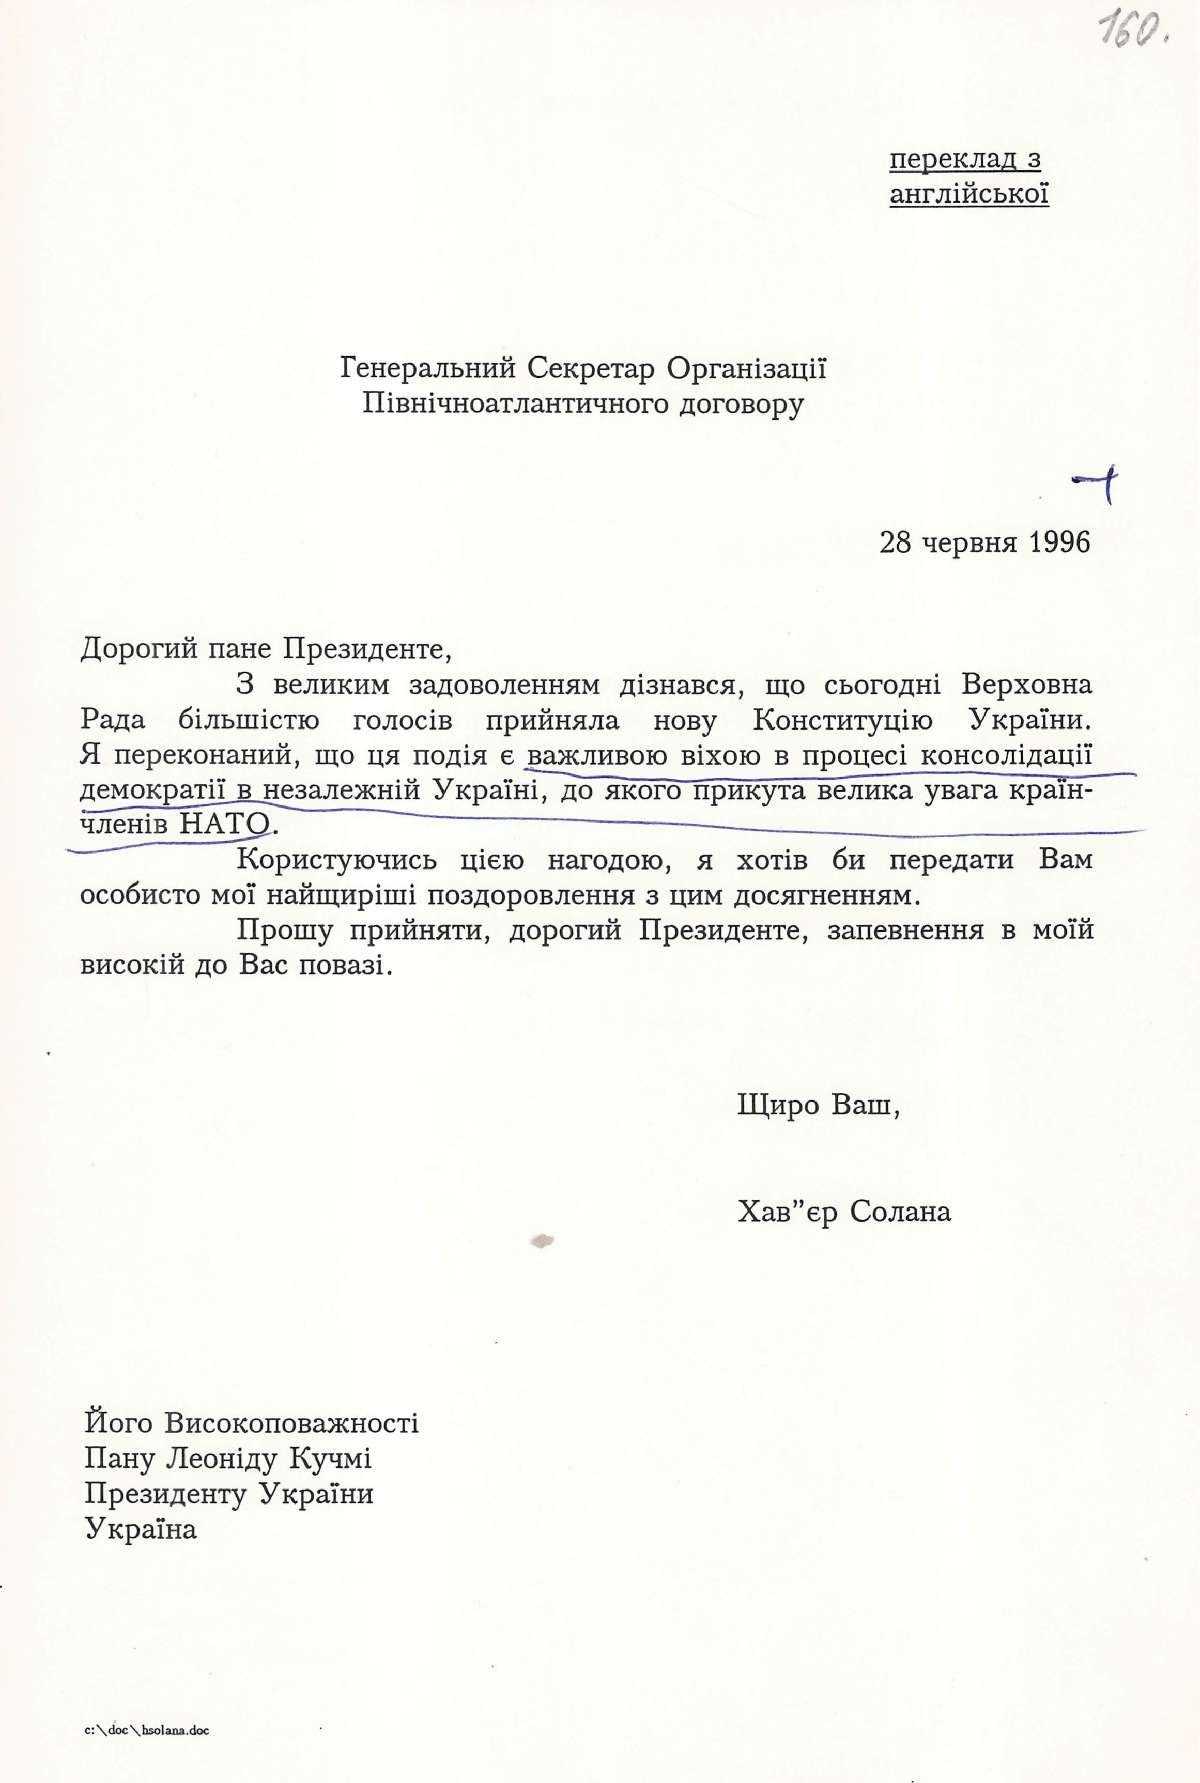 Привітання від Генерального Секретаря Організації Північноатлантичного договору Президента України з прийняттям Конституції України. 28 червня 1996 р.